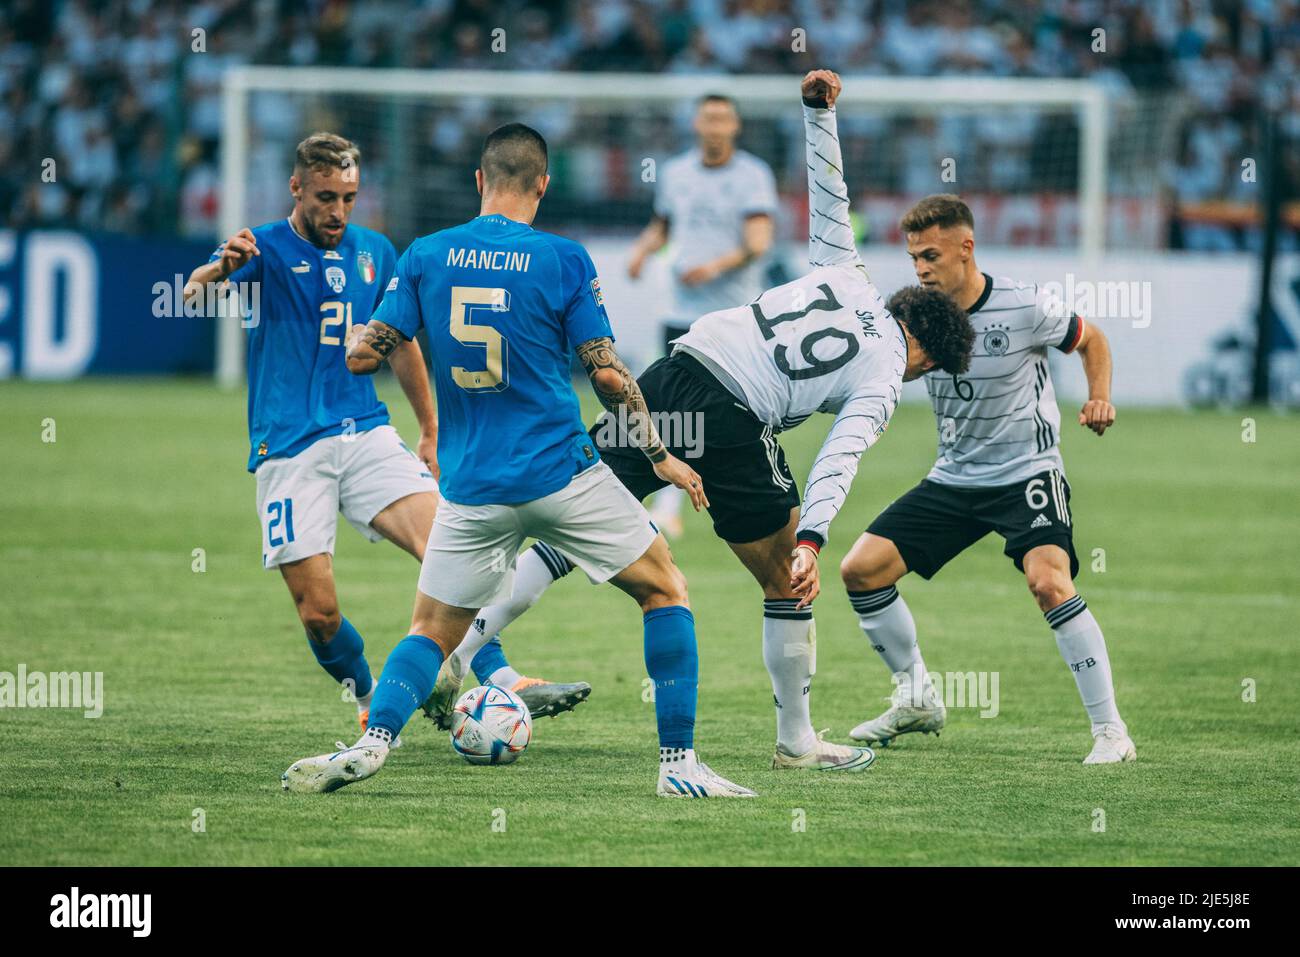 Mönchengladbach, Borussia-Park, 14.06.22: Gianluca Mancini (L) (Italien) gegen Leroy Sane (R) (Deutschland) beim Länderspiel zwischen Deutschland vs. Italie Stockfoto